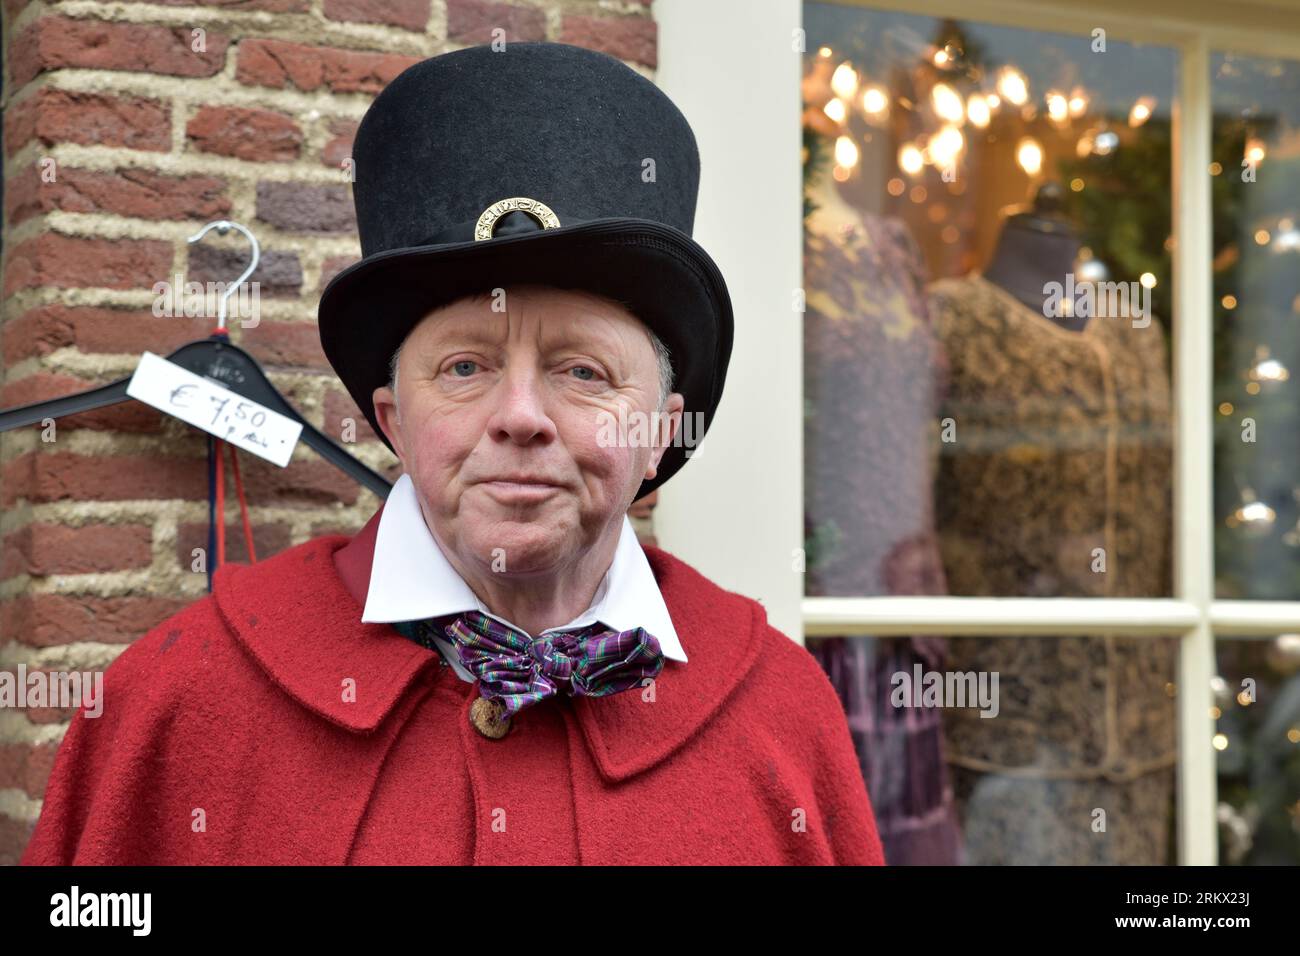 Le gentleman plus âgé, avec un chapeau haut de gamme, une cape rouge, un col blanc et un noeud coloré, joue son rôle lors de la Dickens Feast à Deventer Banque D'Images